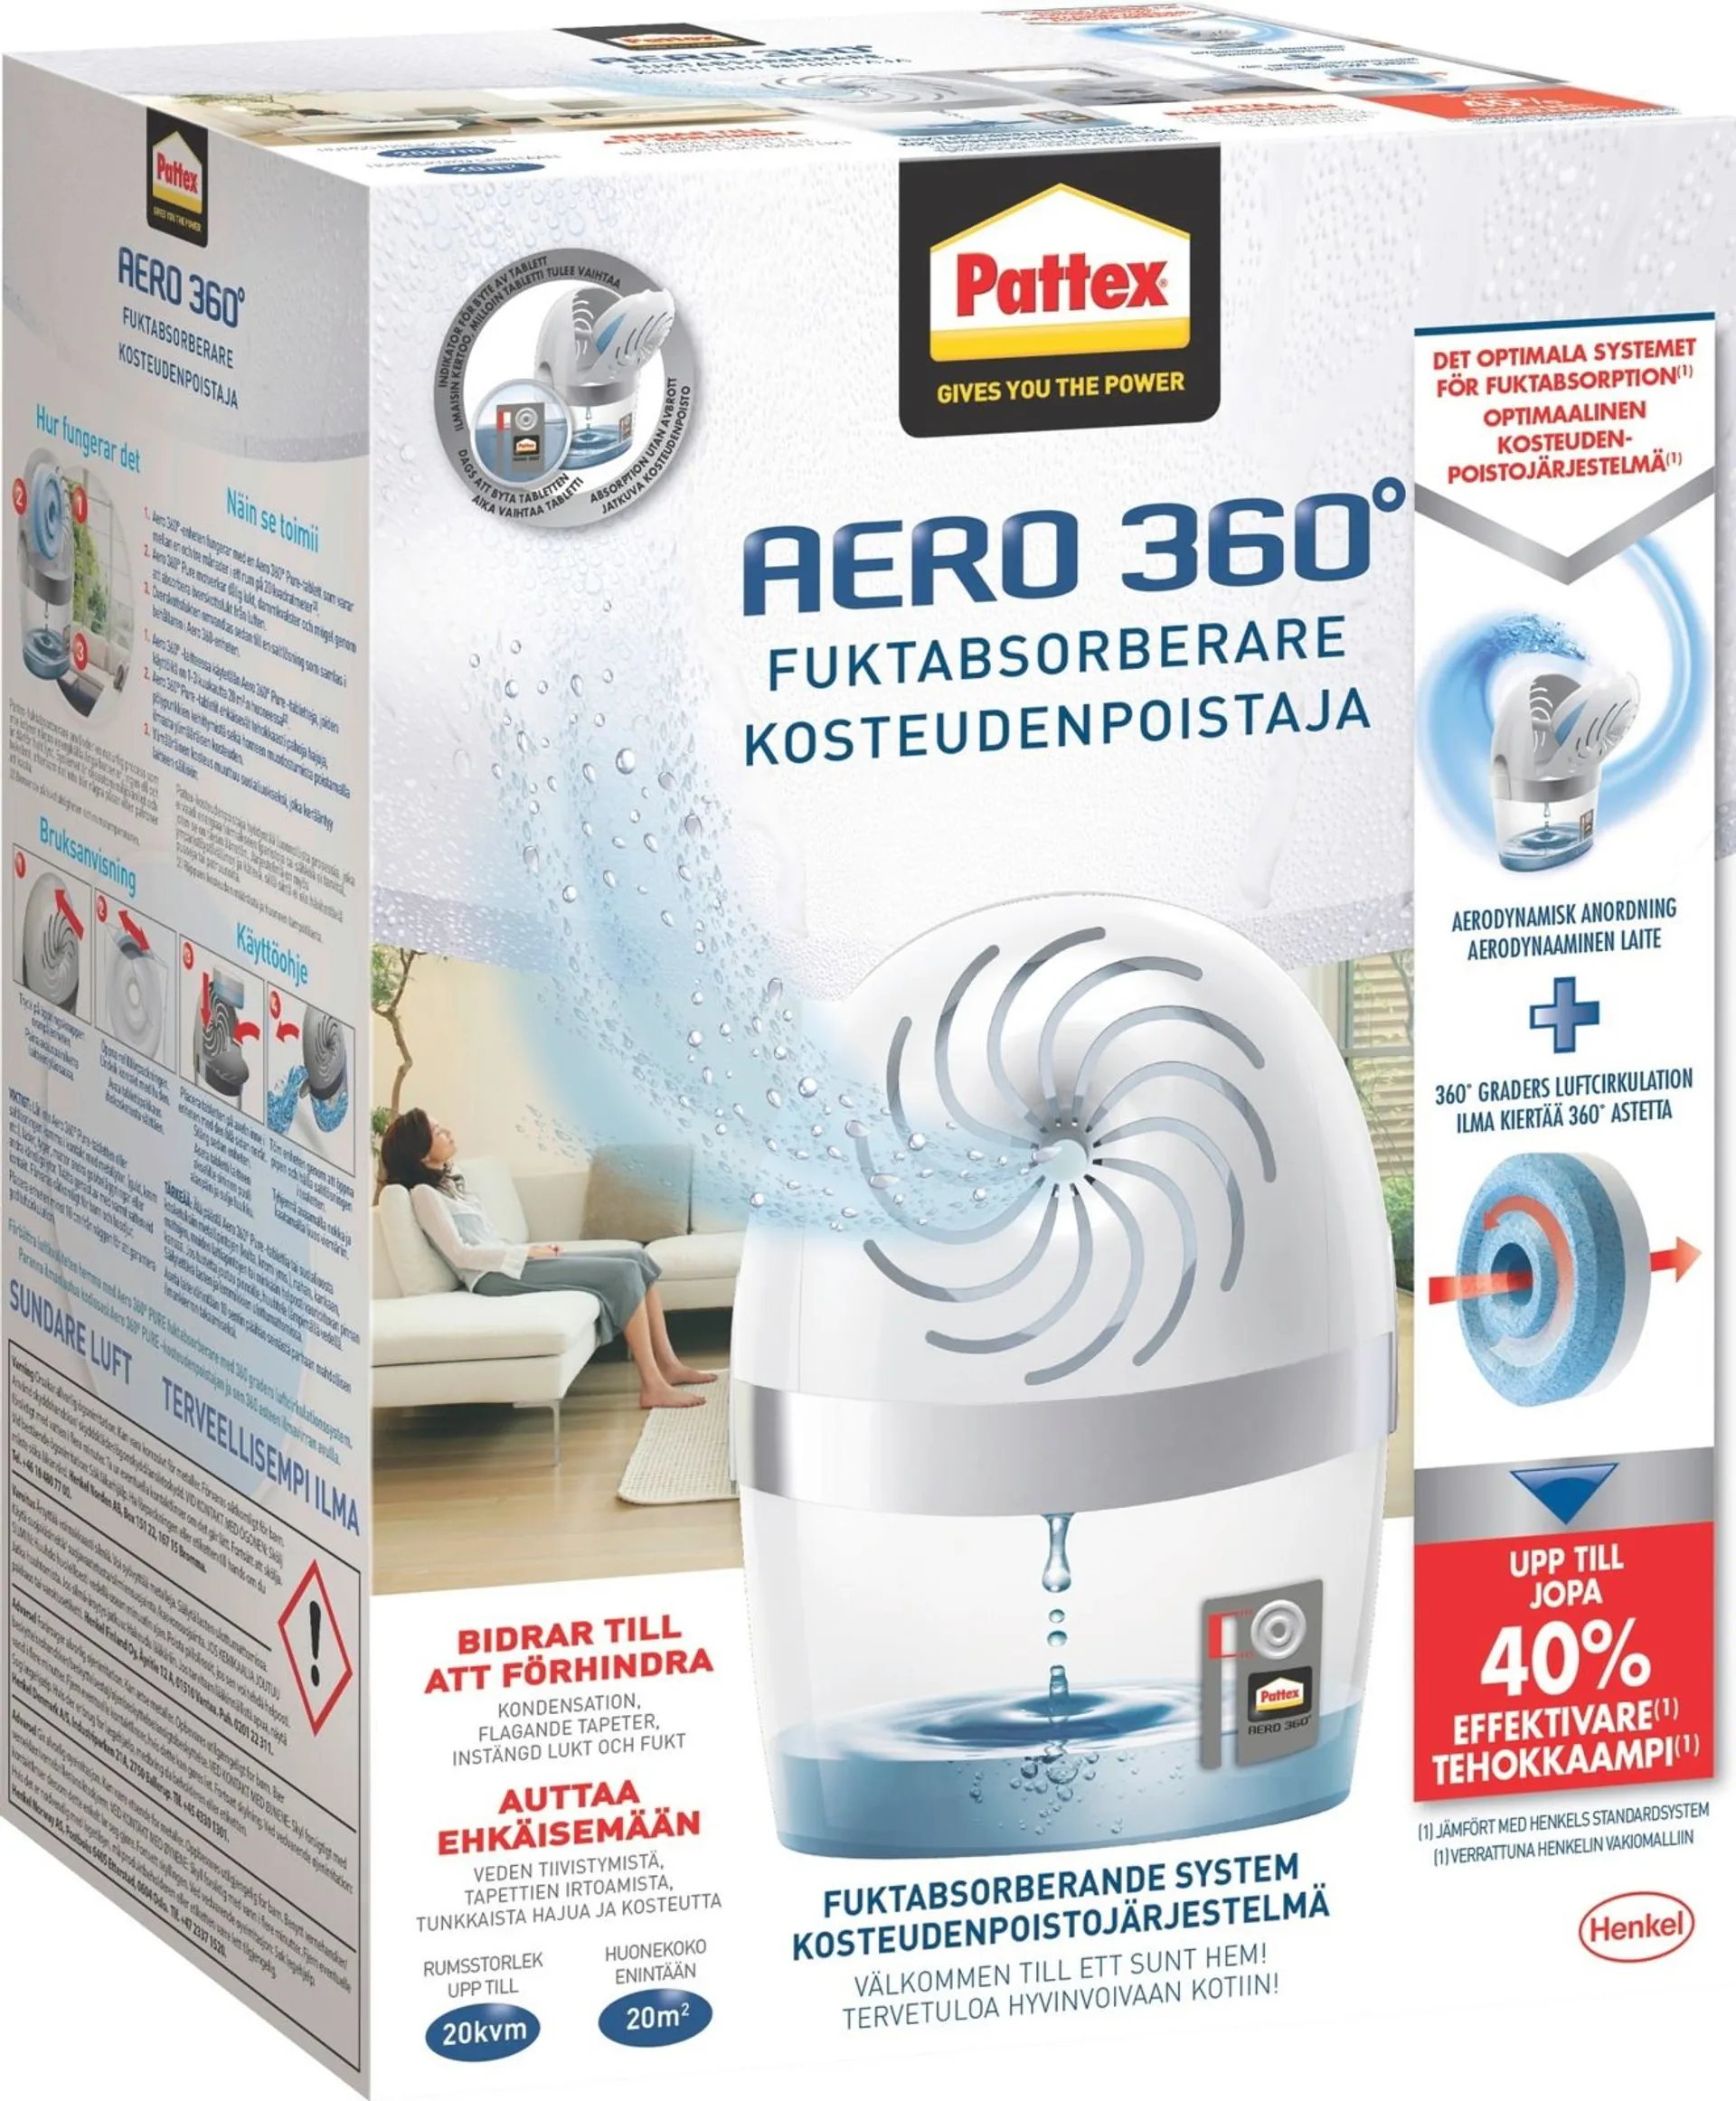 Pattex 450g Kosteudenpoistaja Aero360 laite, sisältää yhden neutraalin tabletin